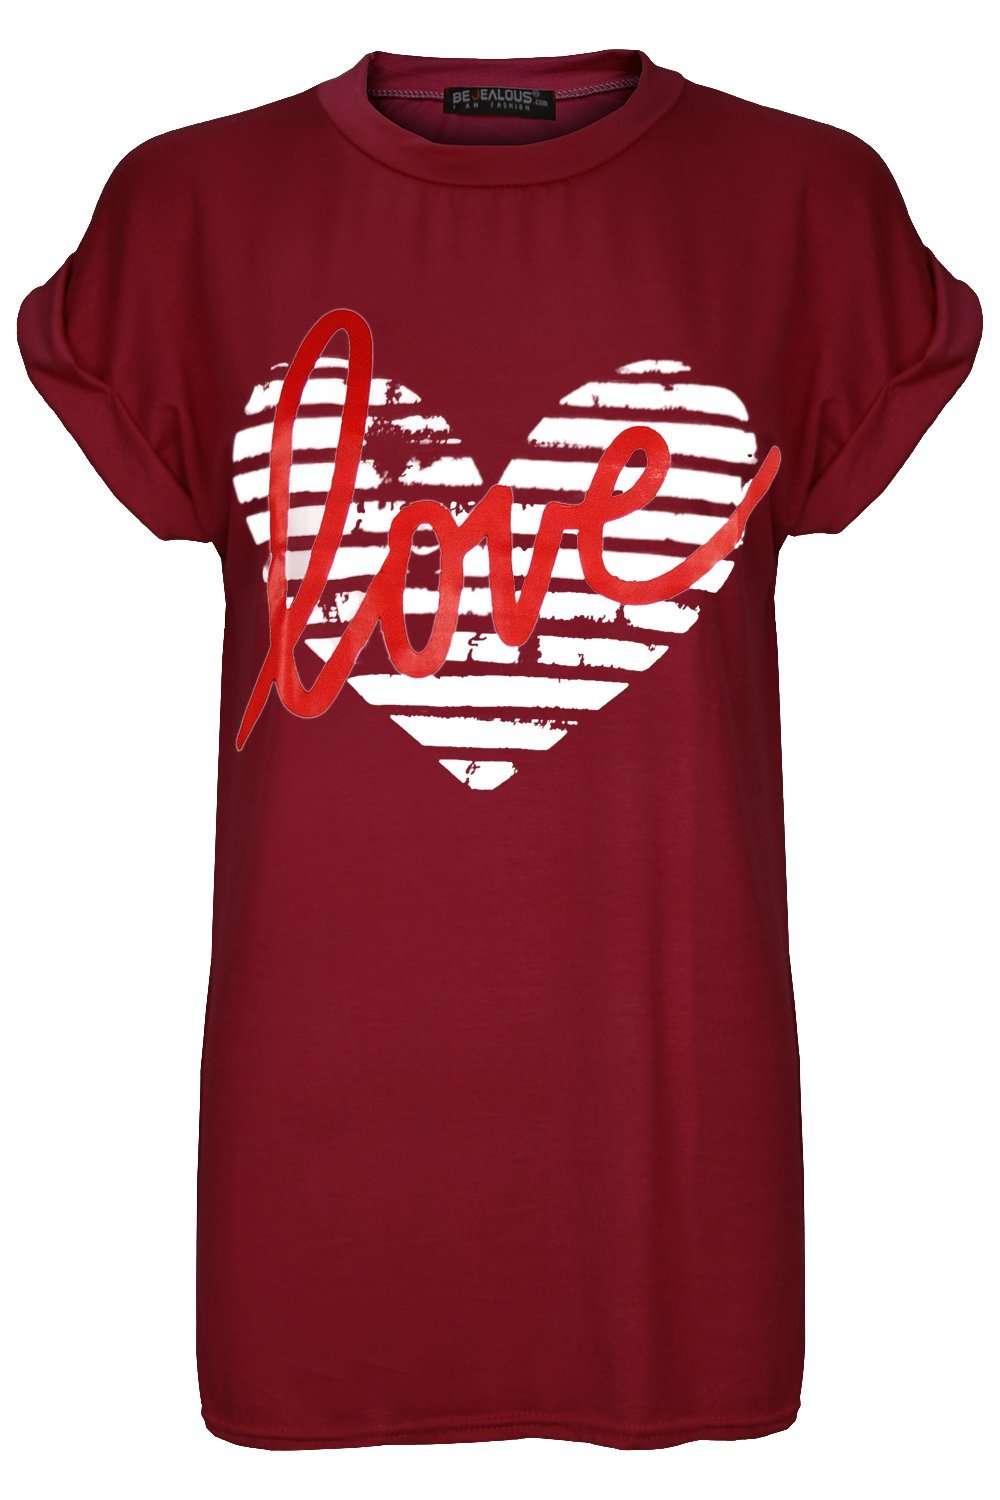 Maria Heart Slogan Print Baggy Tshirt - bejealous-com